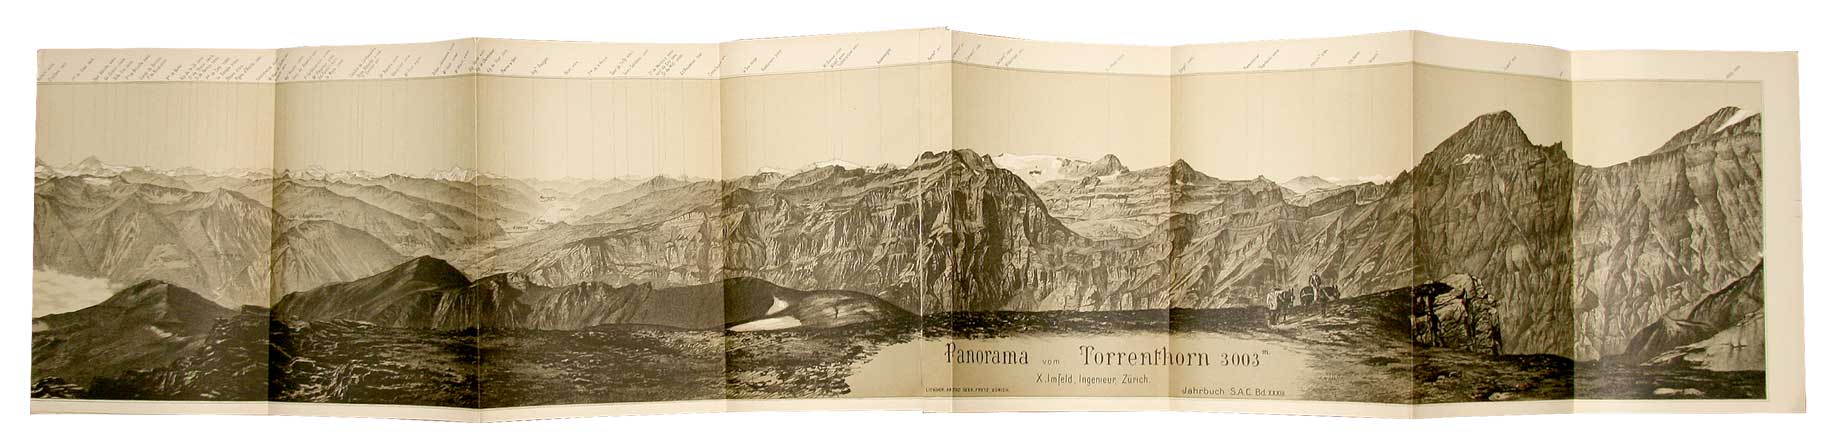 IMFELD, X (Xaver): - Panorama vom Torrenthorn 3003 m. Aufgenommen von X. Imfeld, Ingr. Zrich. Aus S.A.C. Bd. XXXIII (Beilagen).